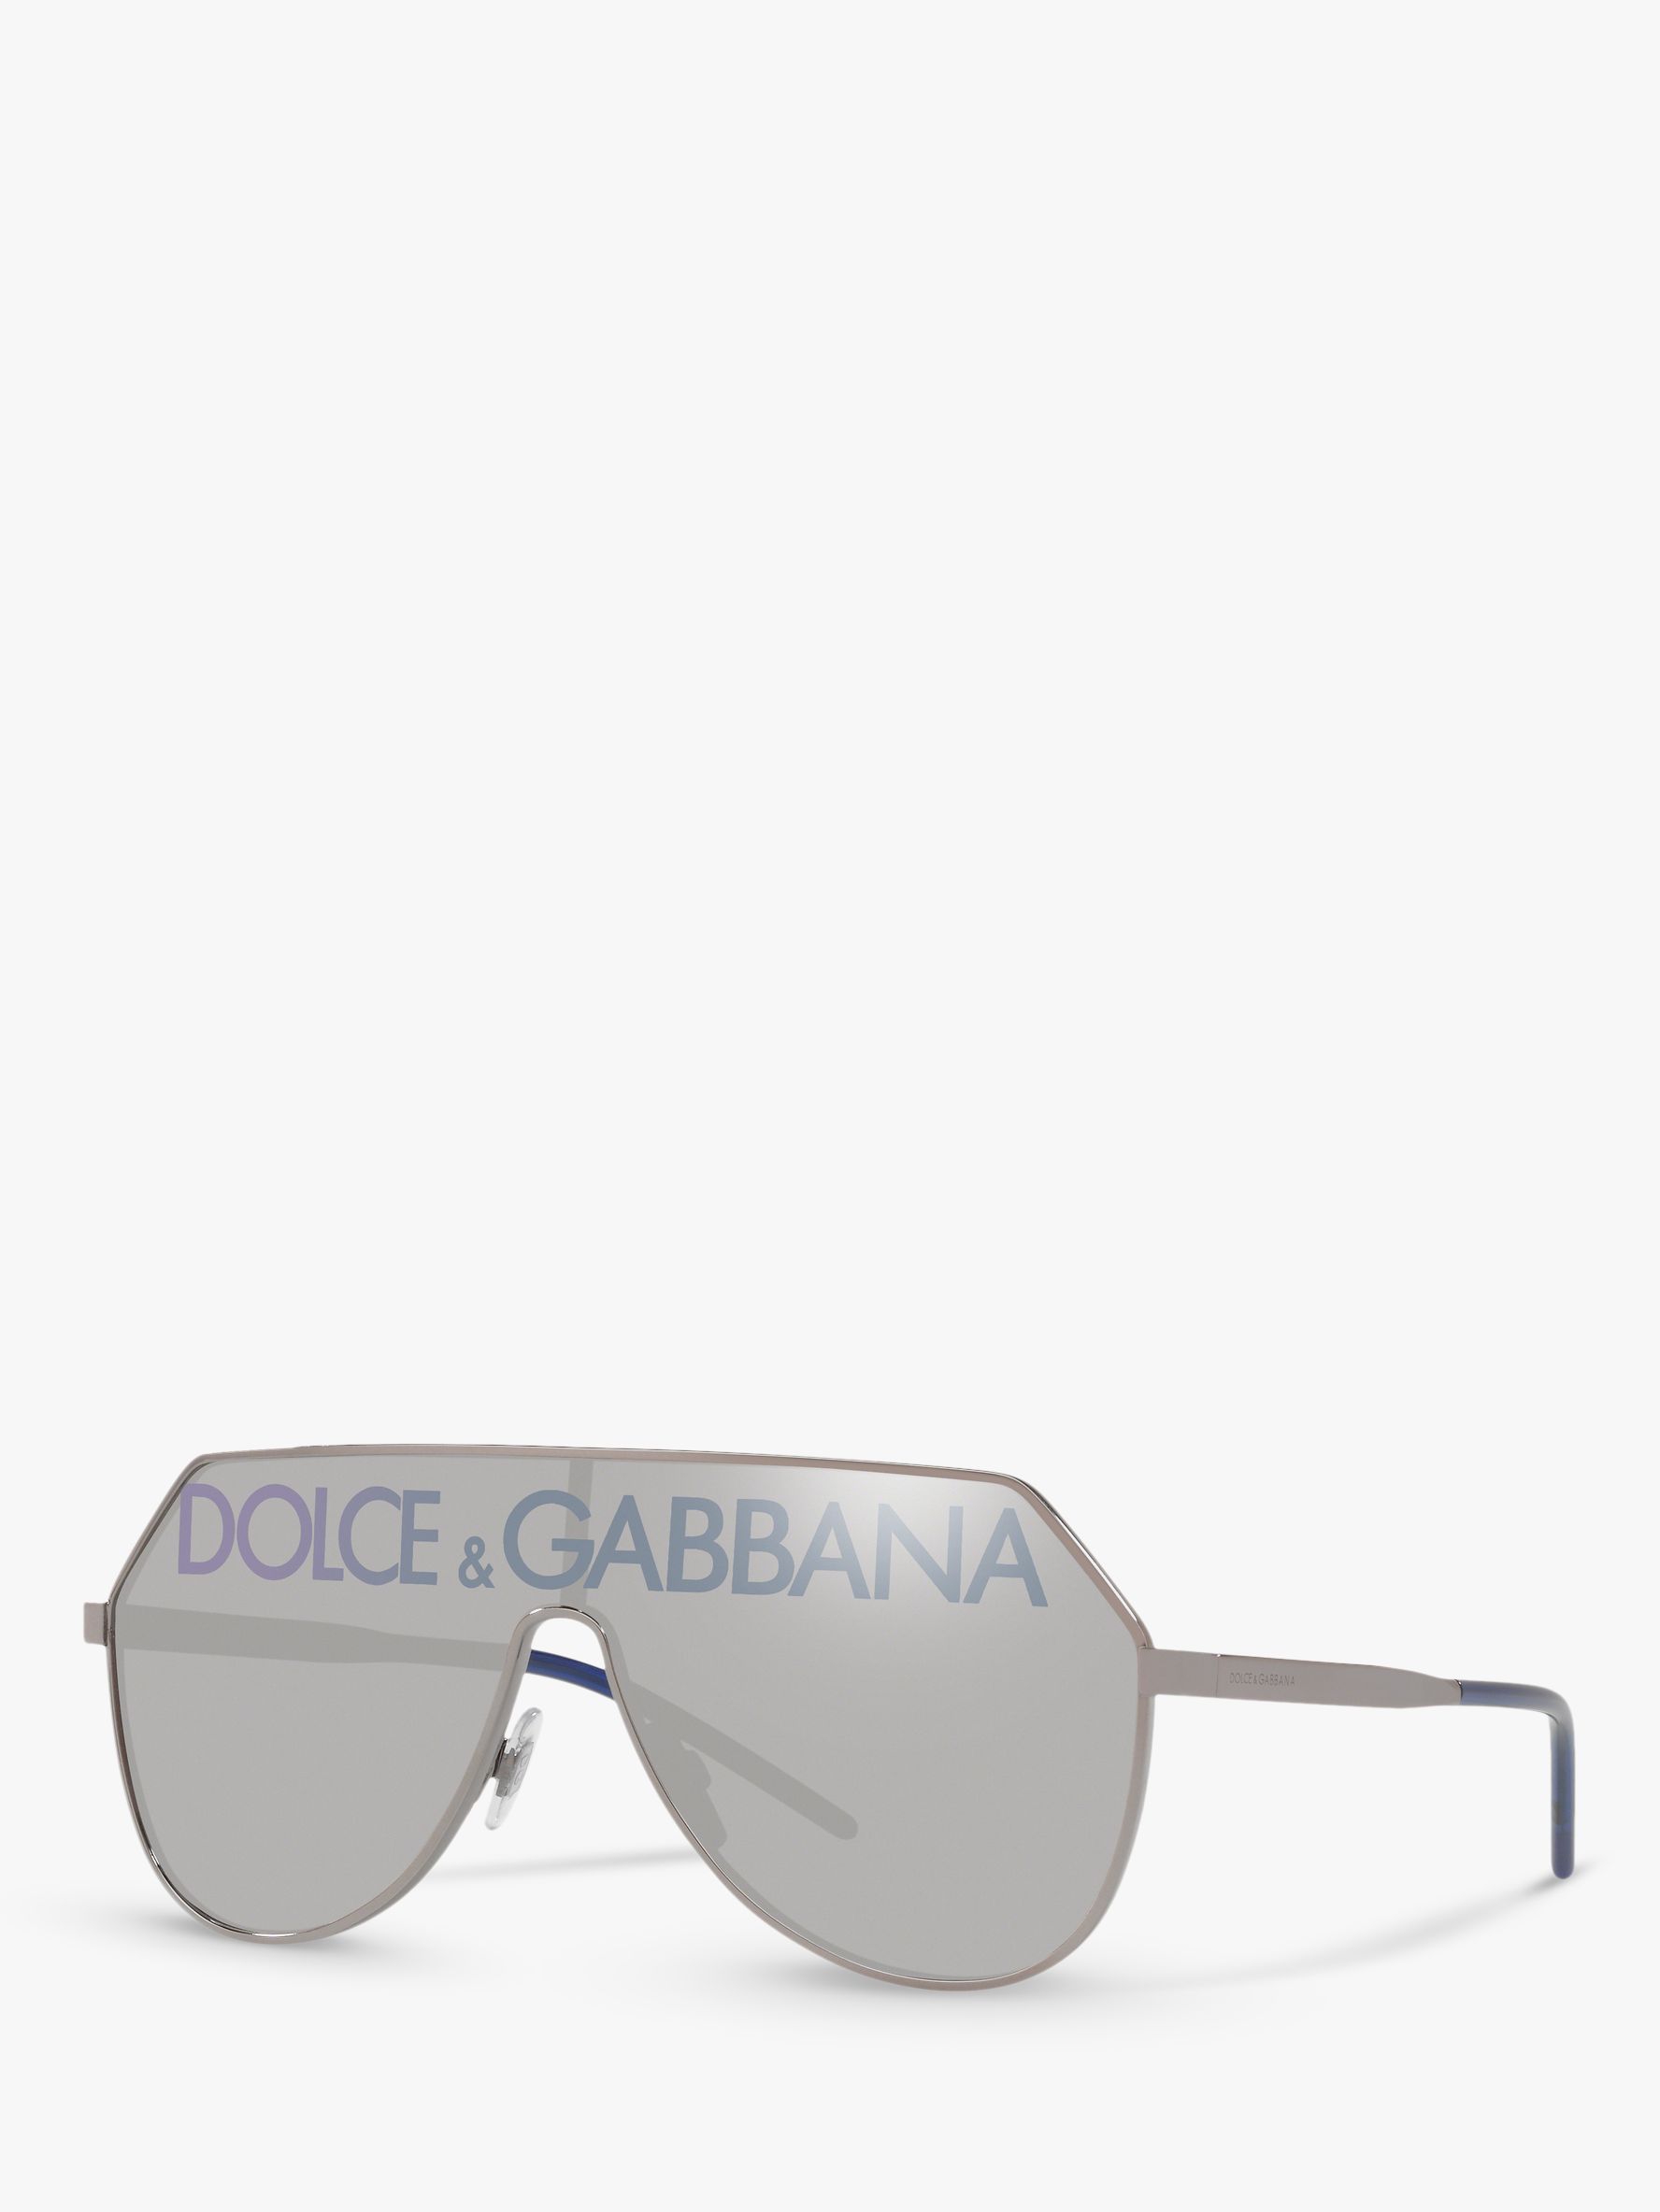 dolce gabbana sunglasses logo